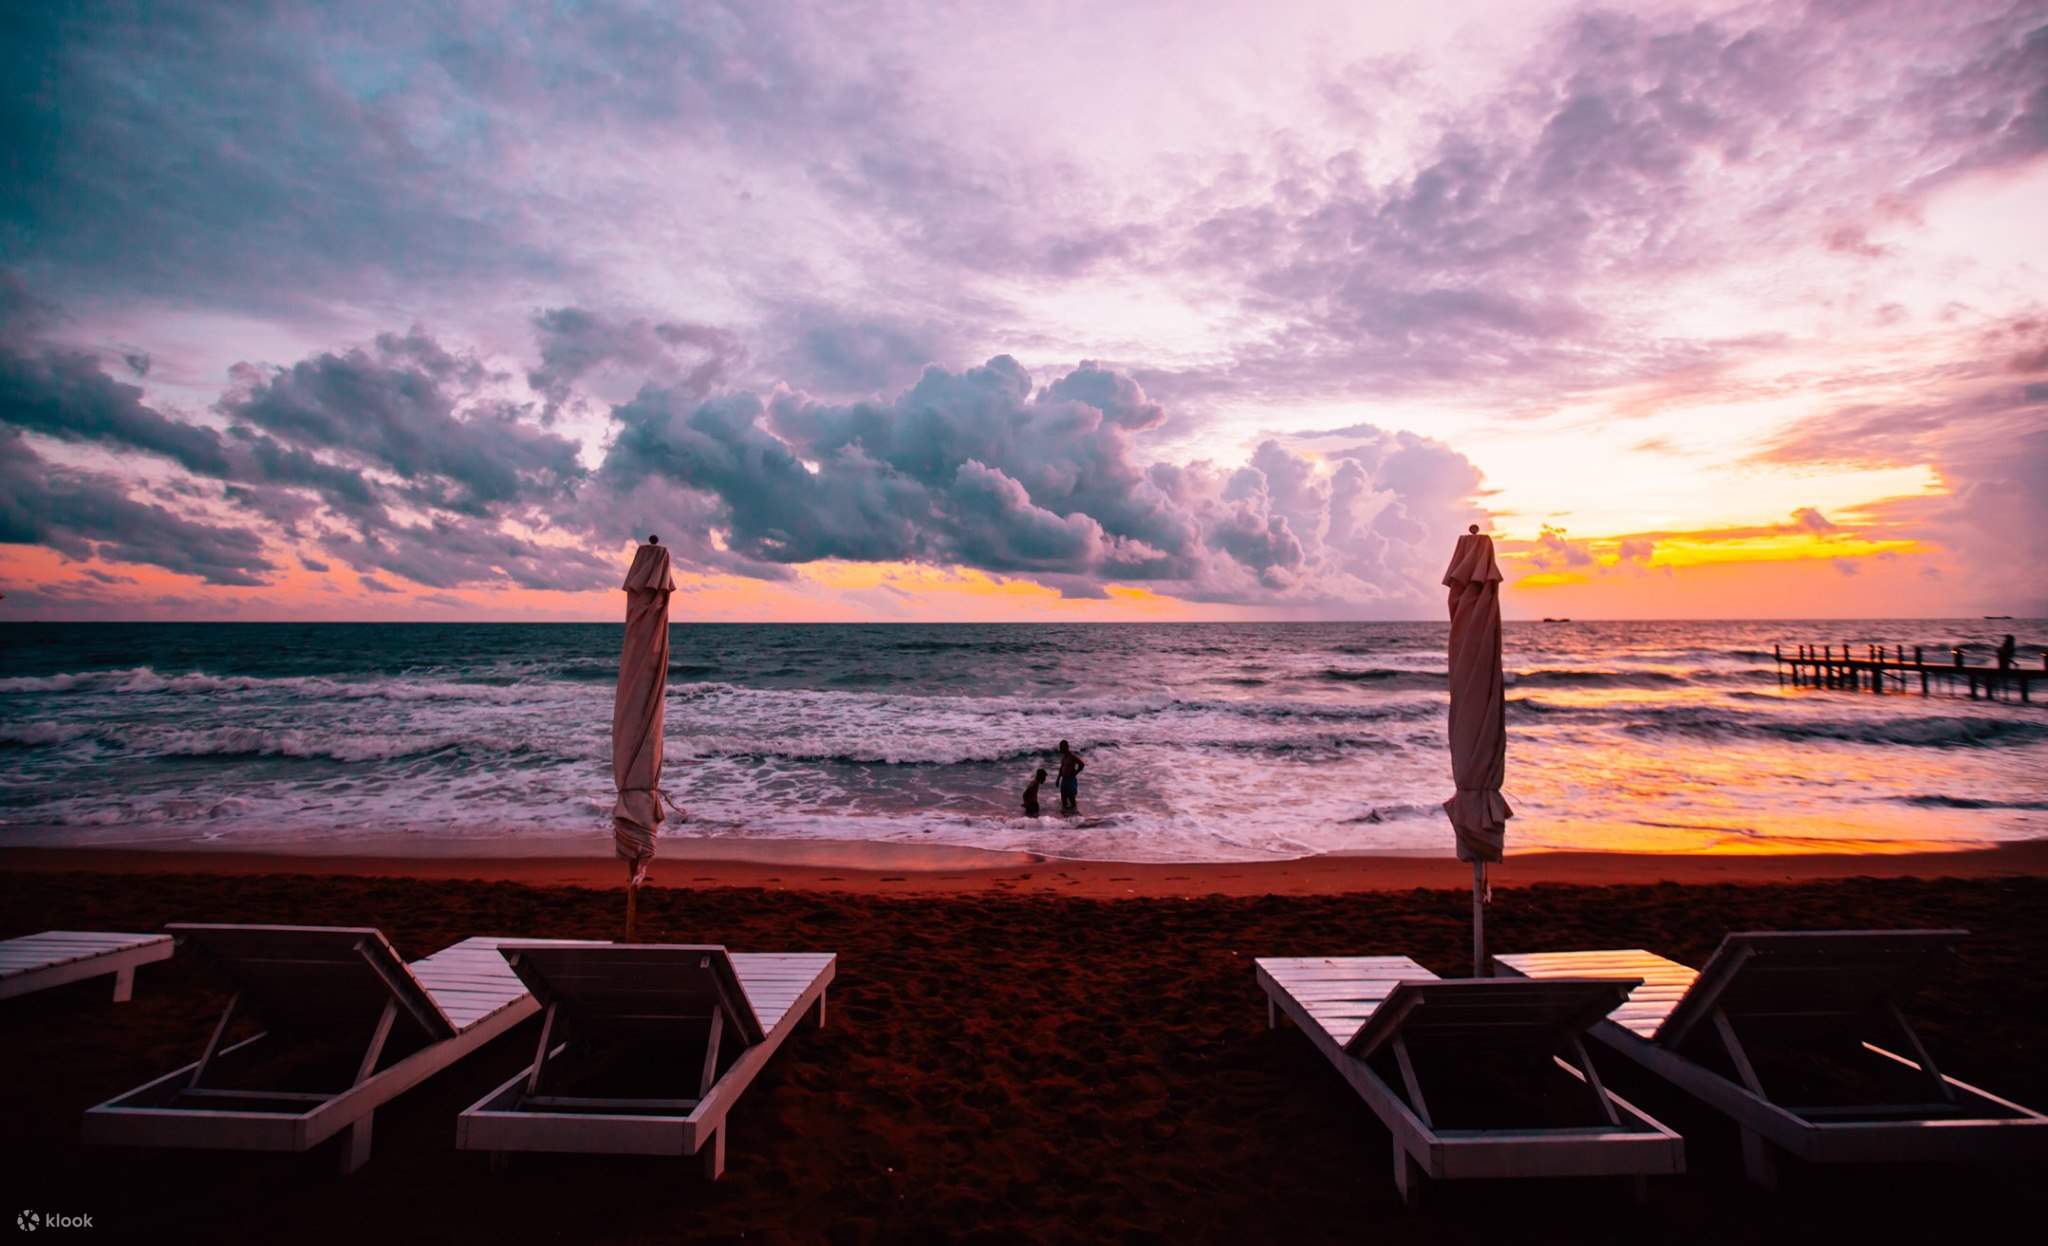 Sunset Sanato Beach Club – một địa điểm lý tưởng để chiêm ngưỡng hoàng hôn đẹp nhất. Hãy để mình được mê mẩn trước vẻ đẹp hoang sơ, yên bình của biển và nắm bắt khoảnh khắc hoàng hôn lả tả – tất cả đều được ghi lại trong hình ảnh đầy sắc màu của bạn.